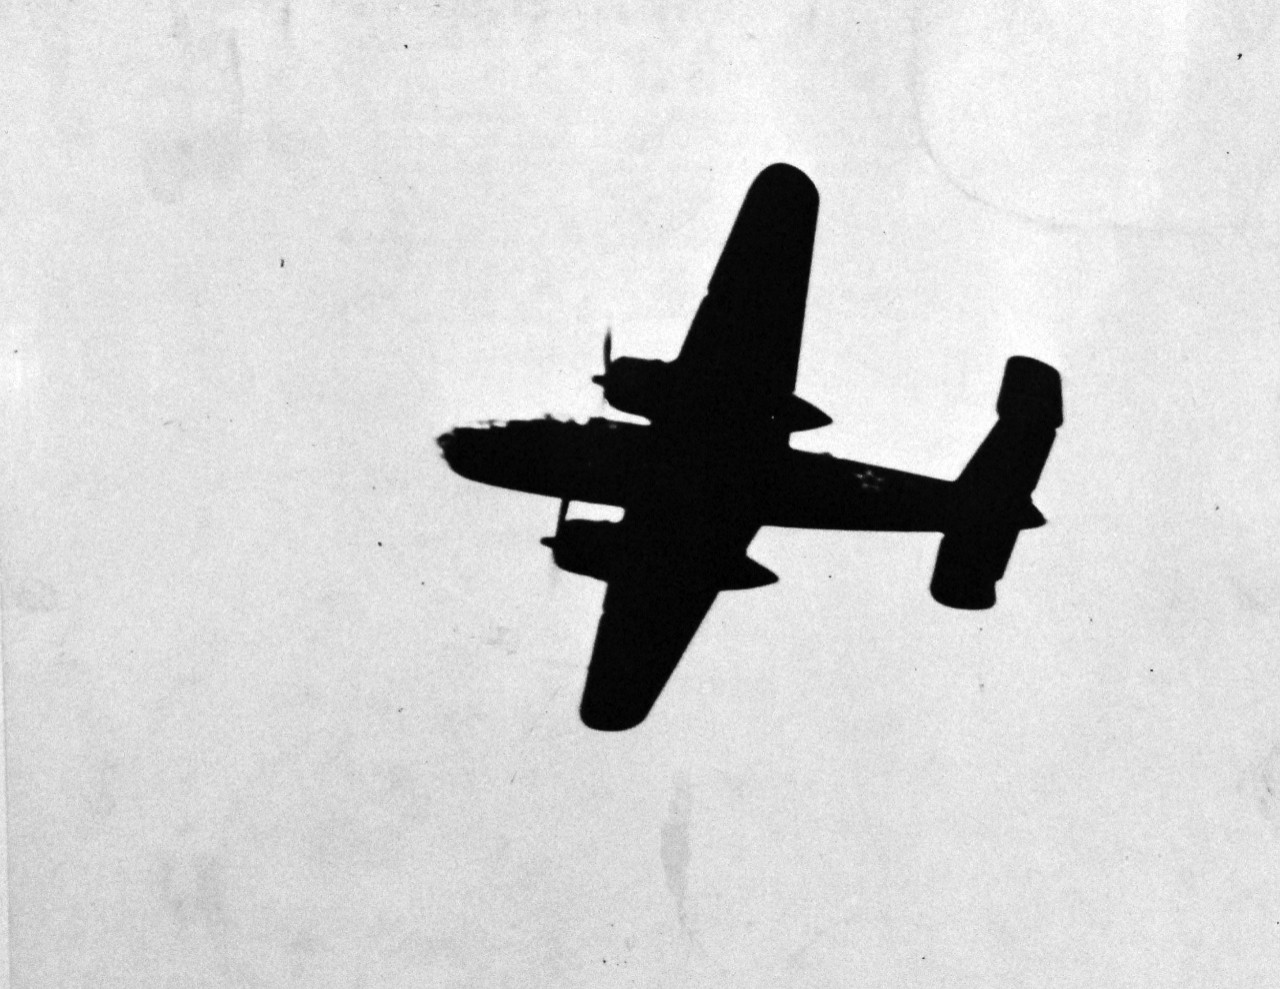 80-G-41198: Doolittle Raid on Japan, April 18, 1942